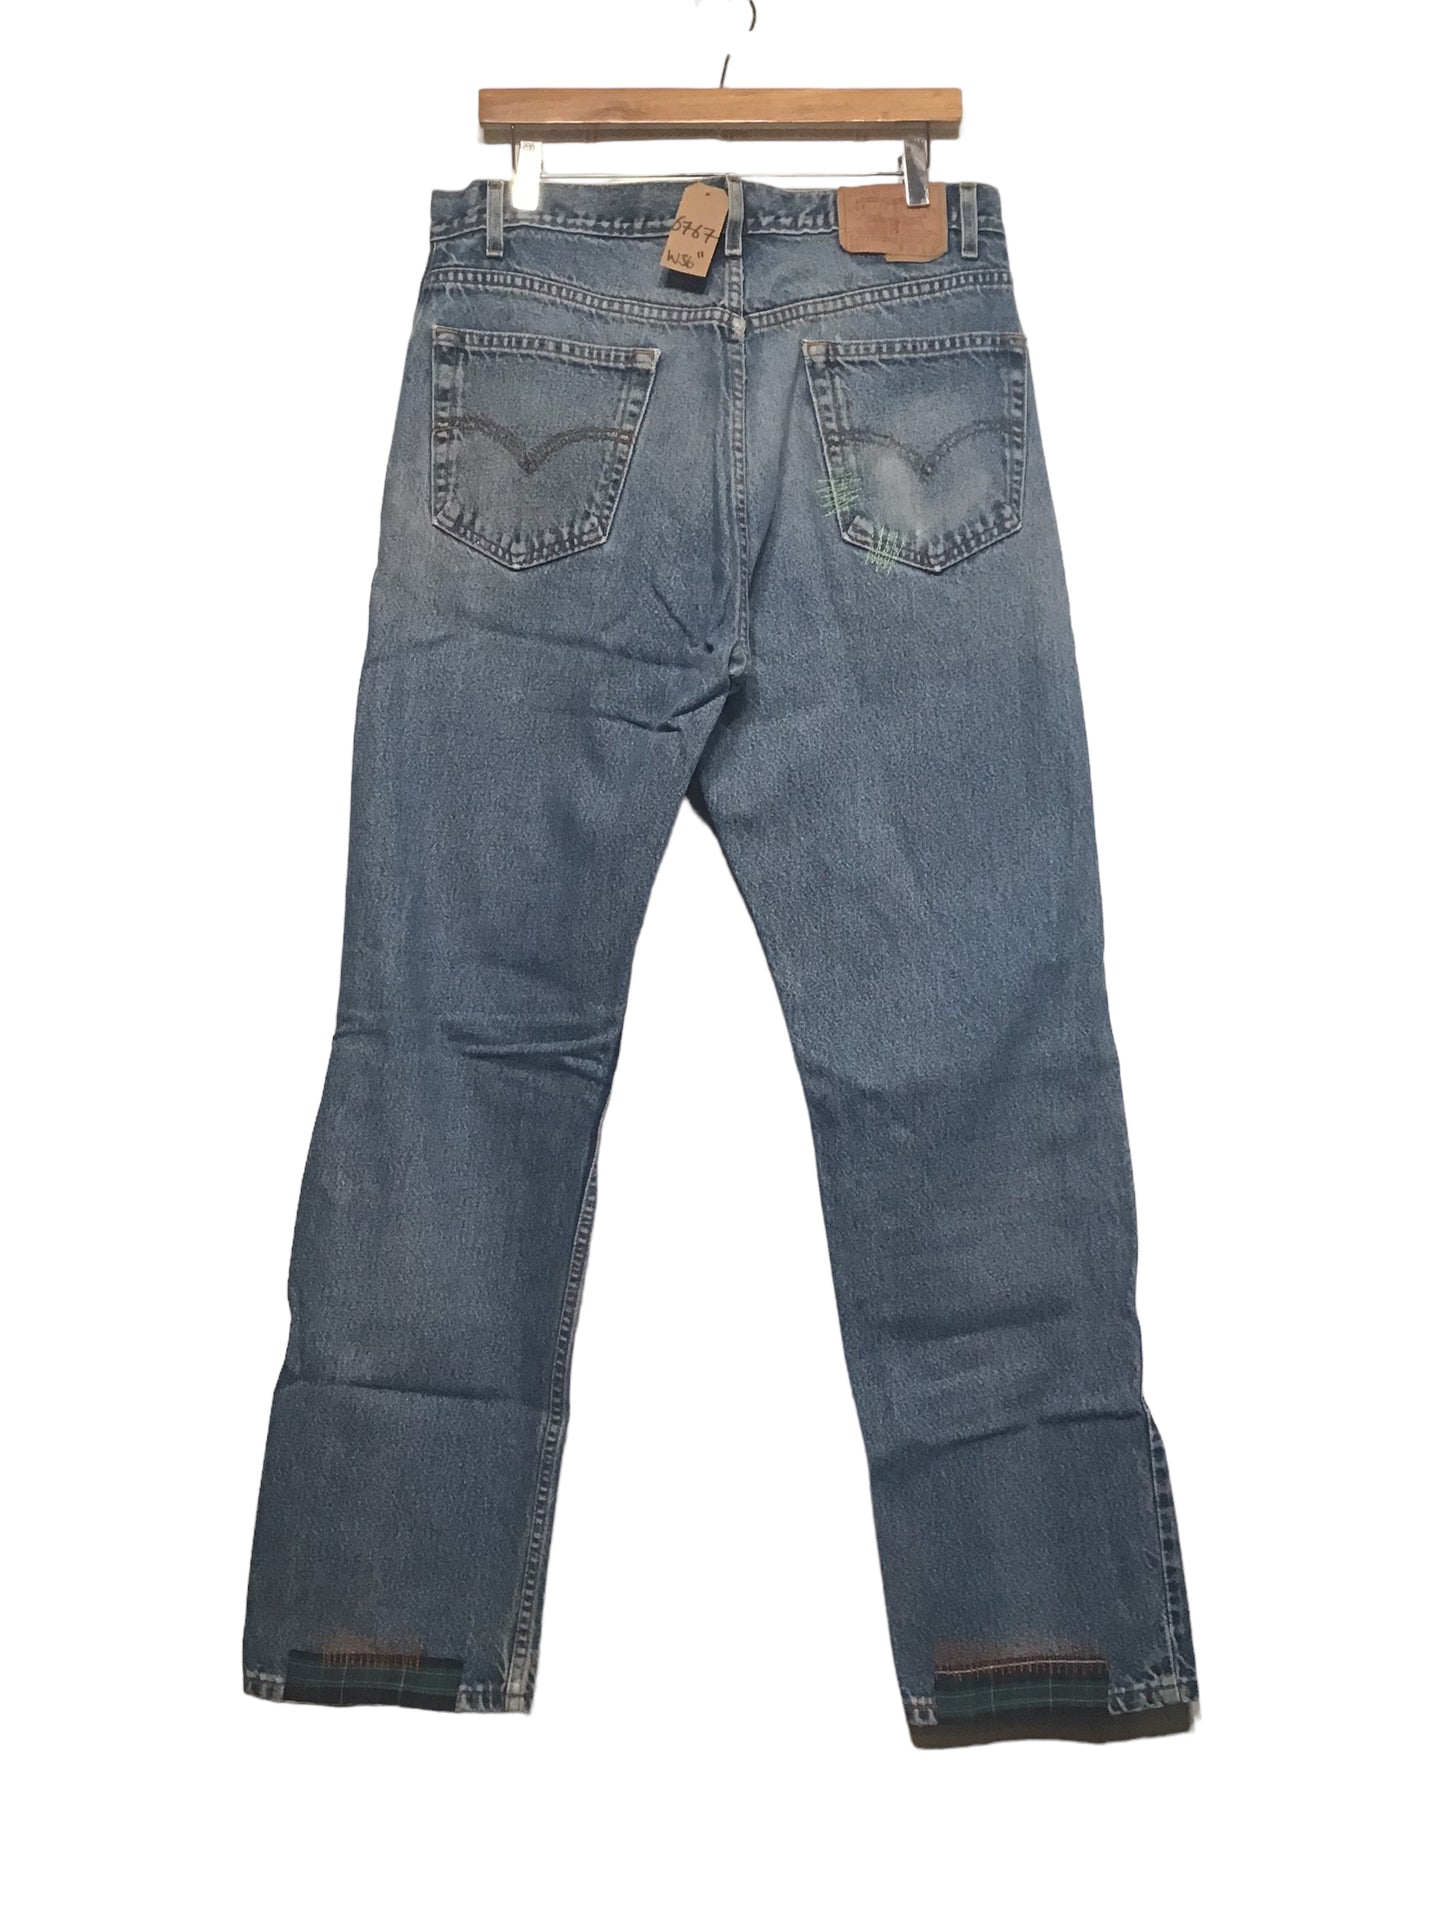 Levi 505 Embellished Jeans (36x32)